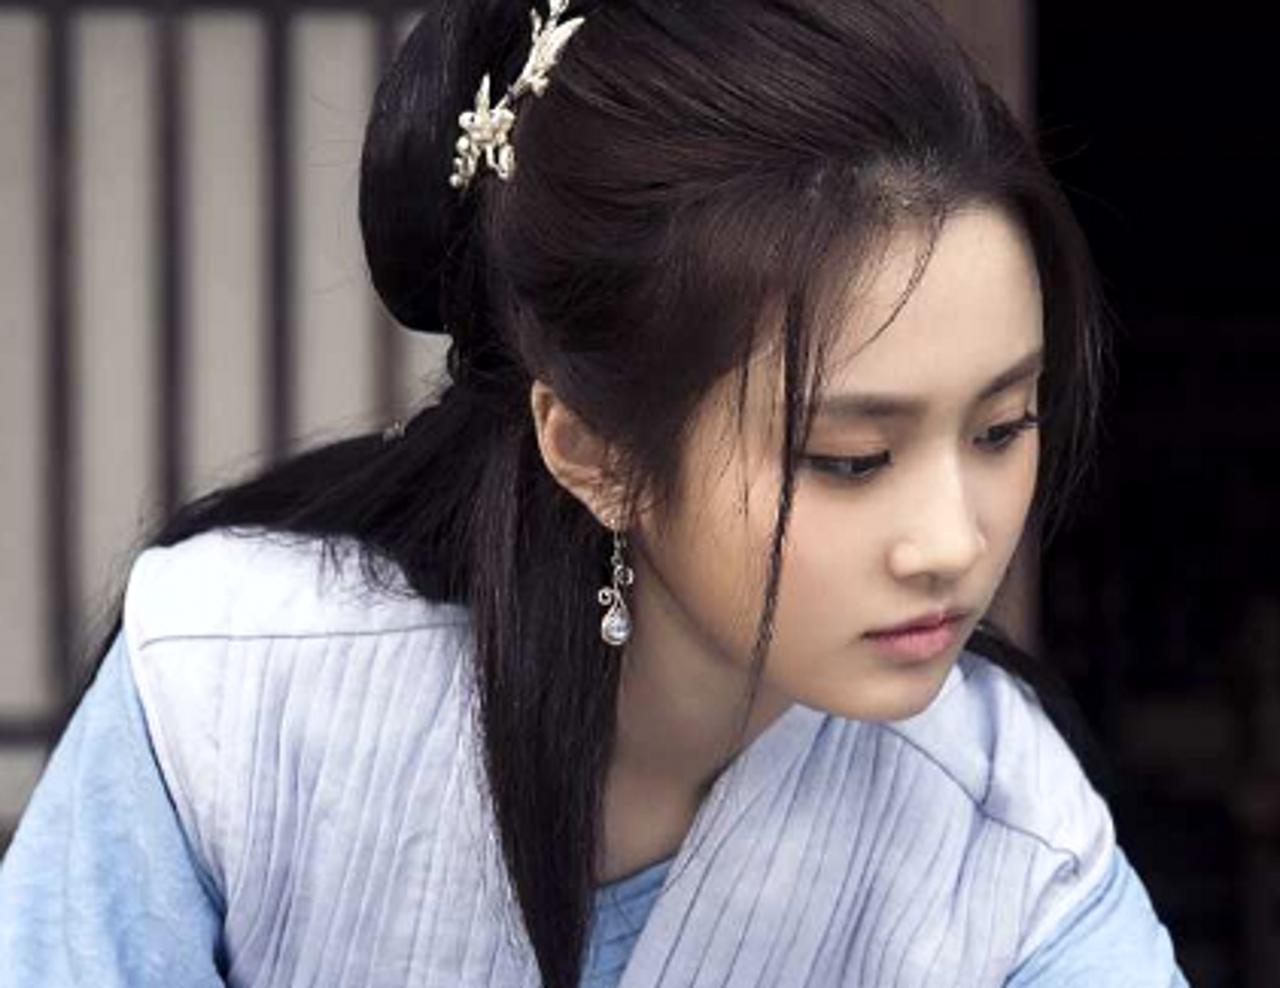 刘美含是1991年出生的广东女星,既是一位演员,还是一位歌手,曾经是